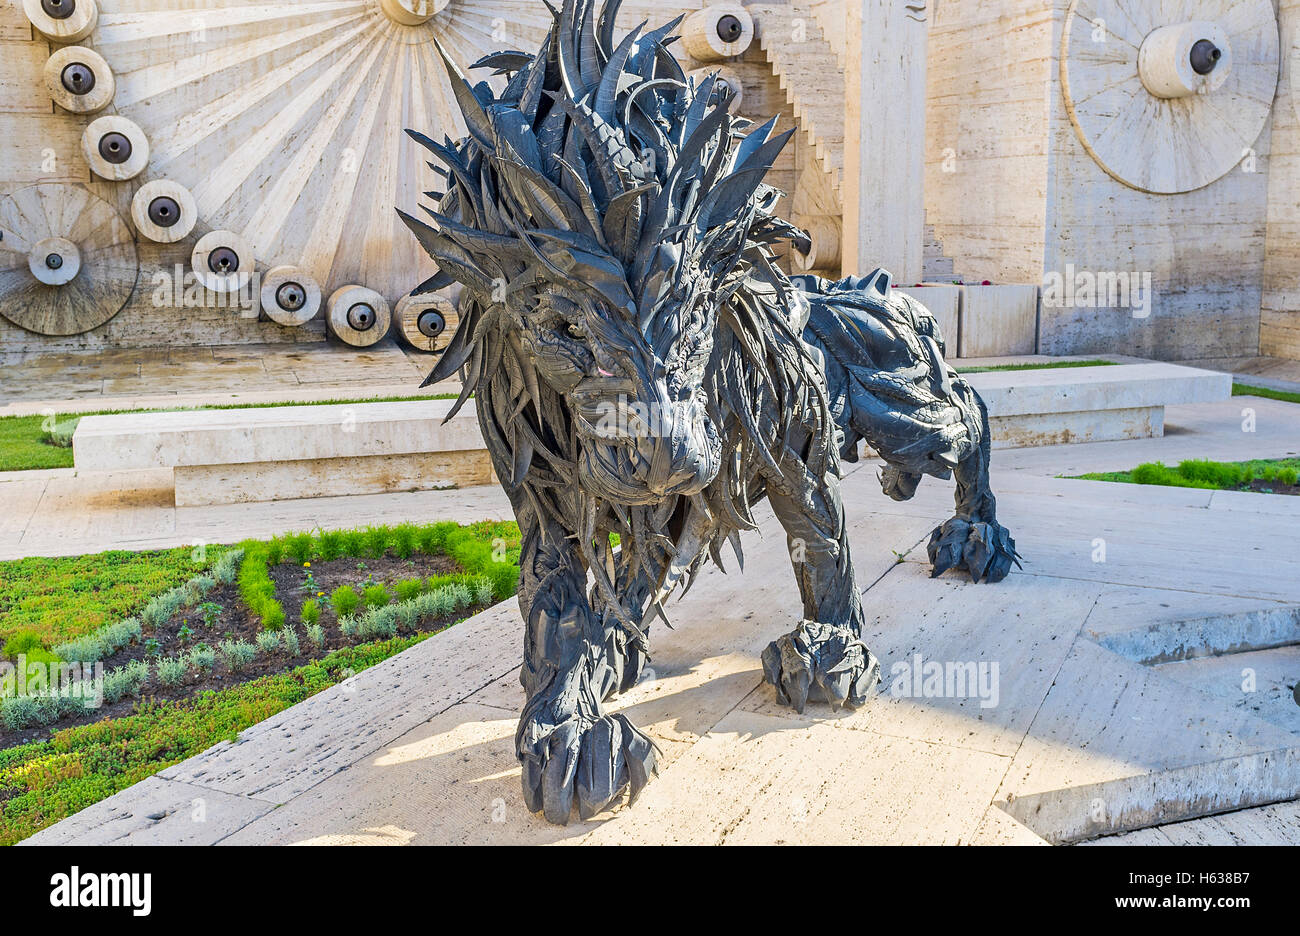 Le lion noir inhabituel, fait de pneus est la sculpture de Ji Yong-Ho, situé dans la région de Cascade, Yerevan Banque D'Images